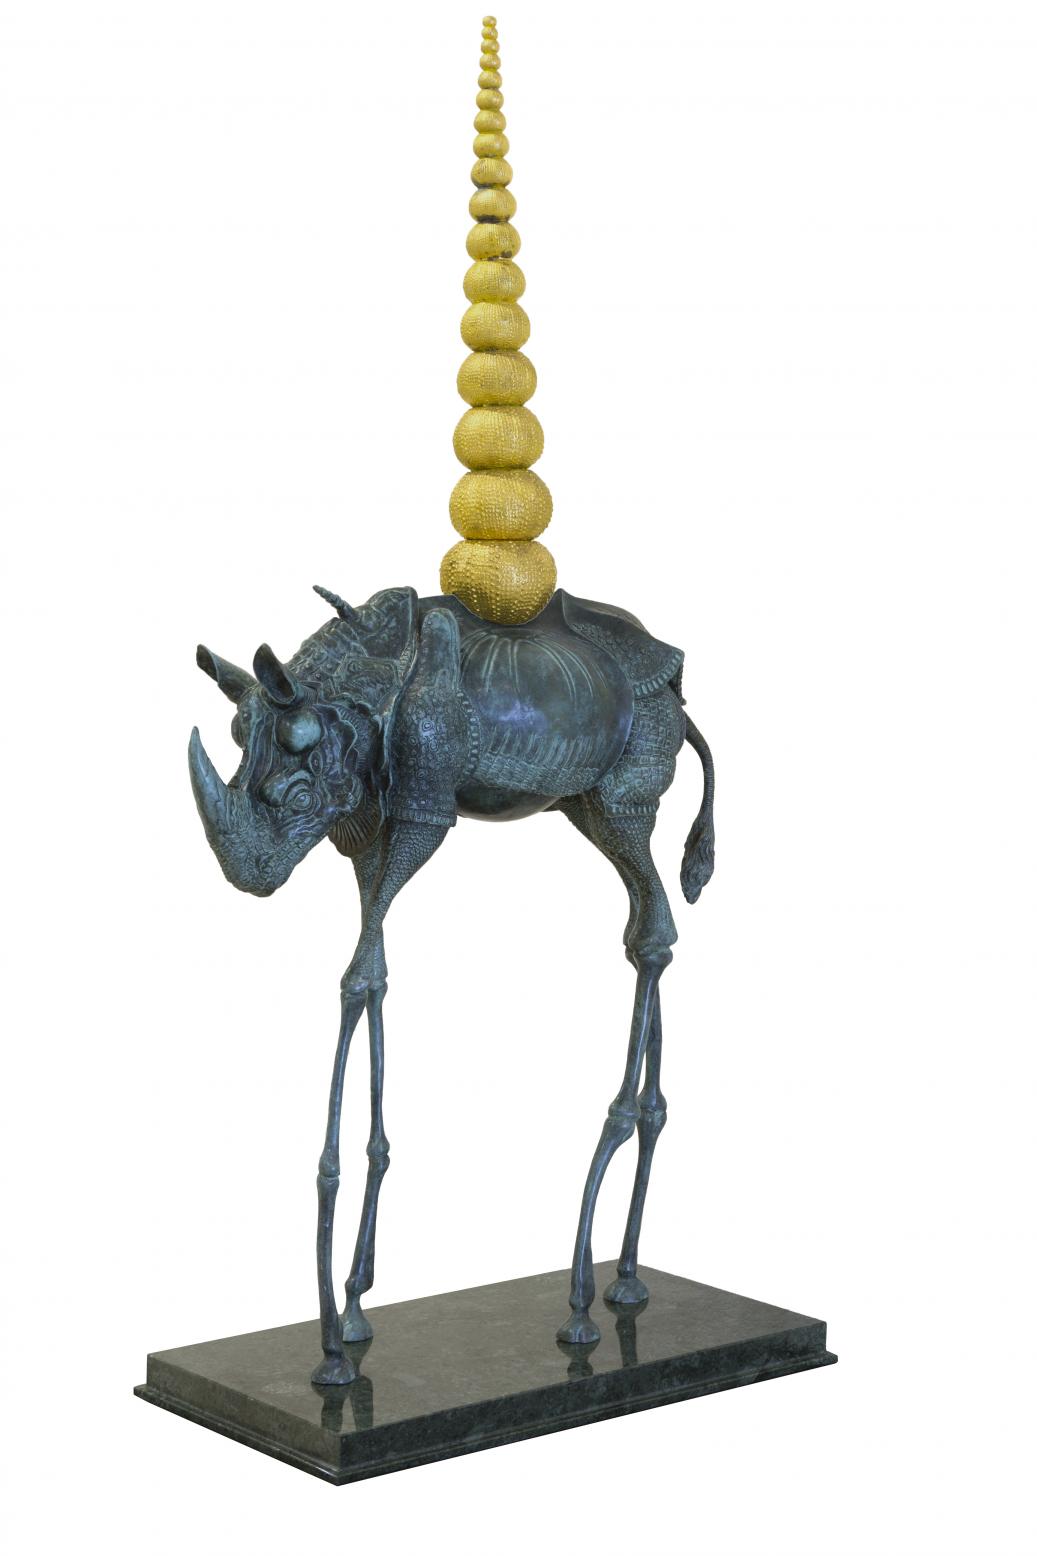 Le Rhinoceros Cosmique (1956) - Salvador Dalí